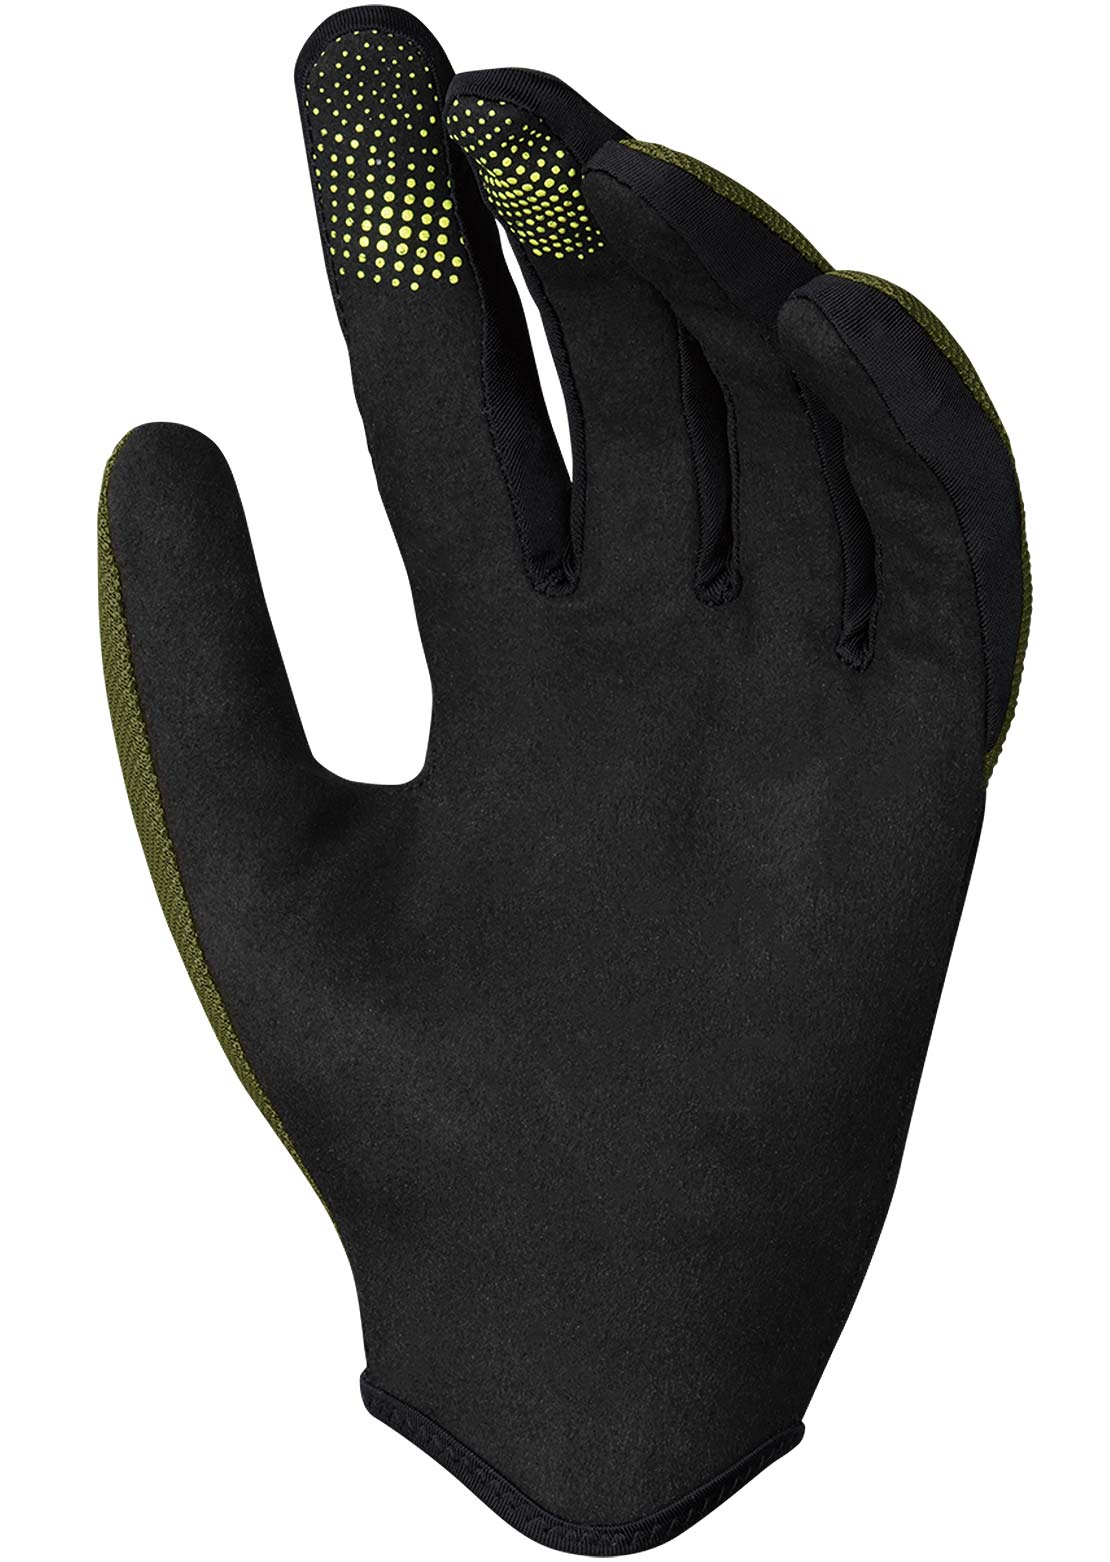 IXS Junior Carve Gloves Olive